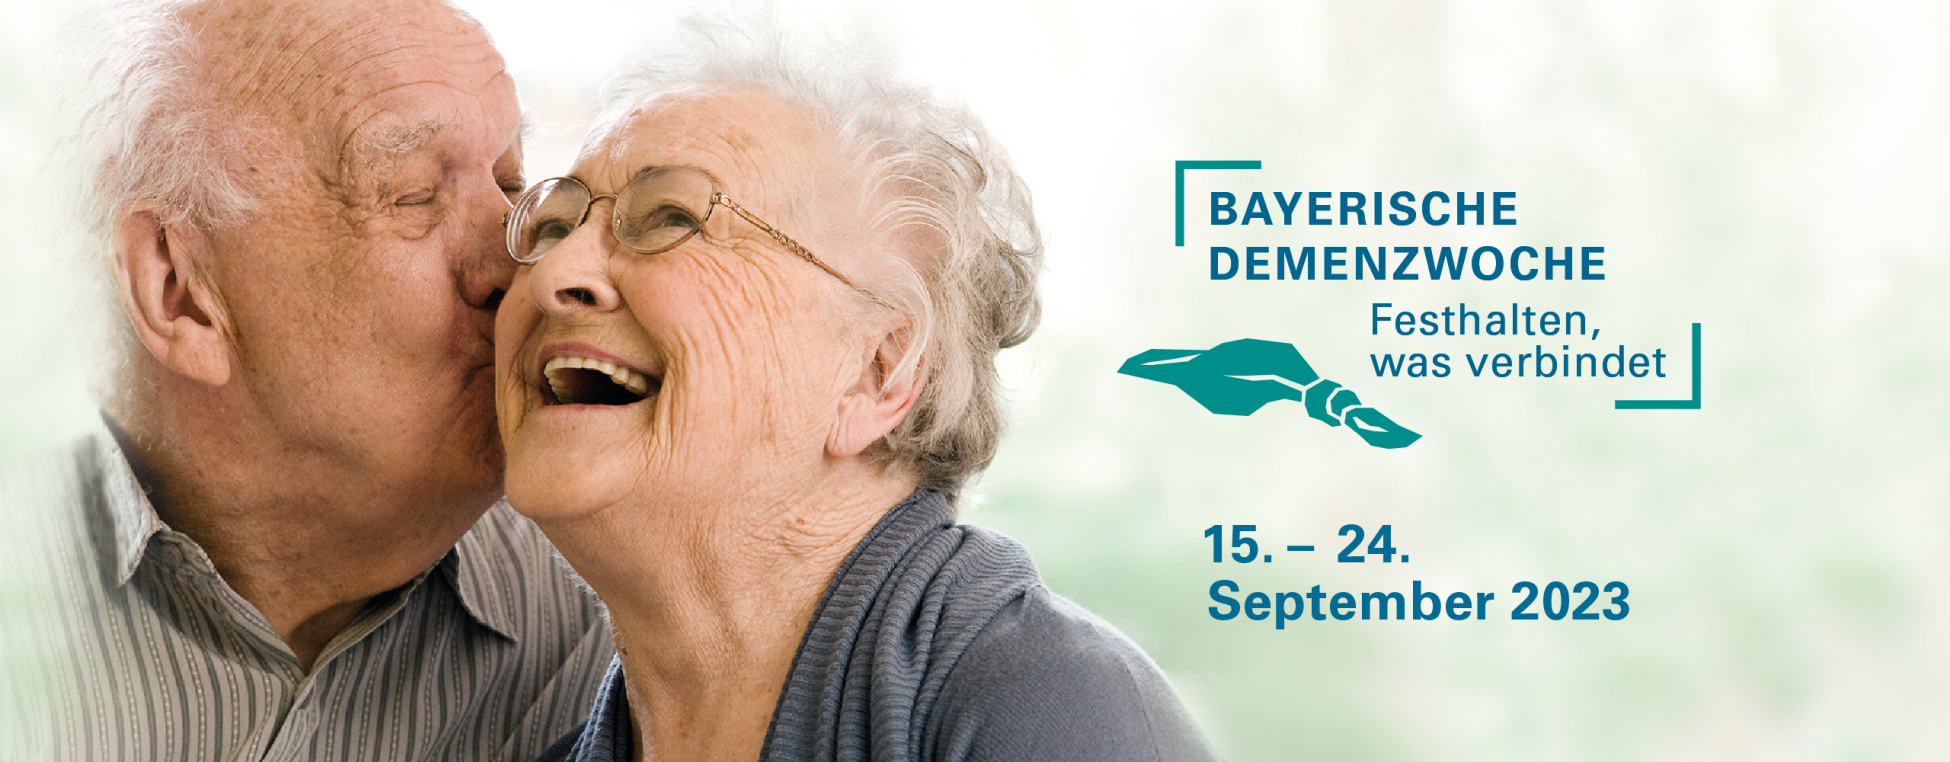 Bayerische Demenzwoche 15. bis 24. September 2023